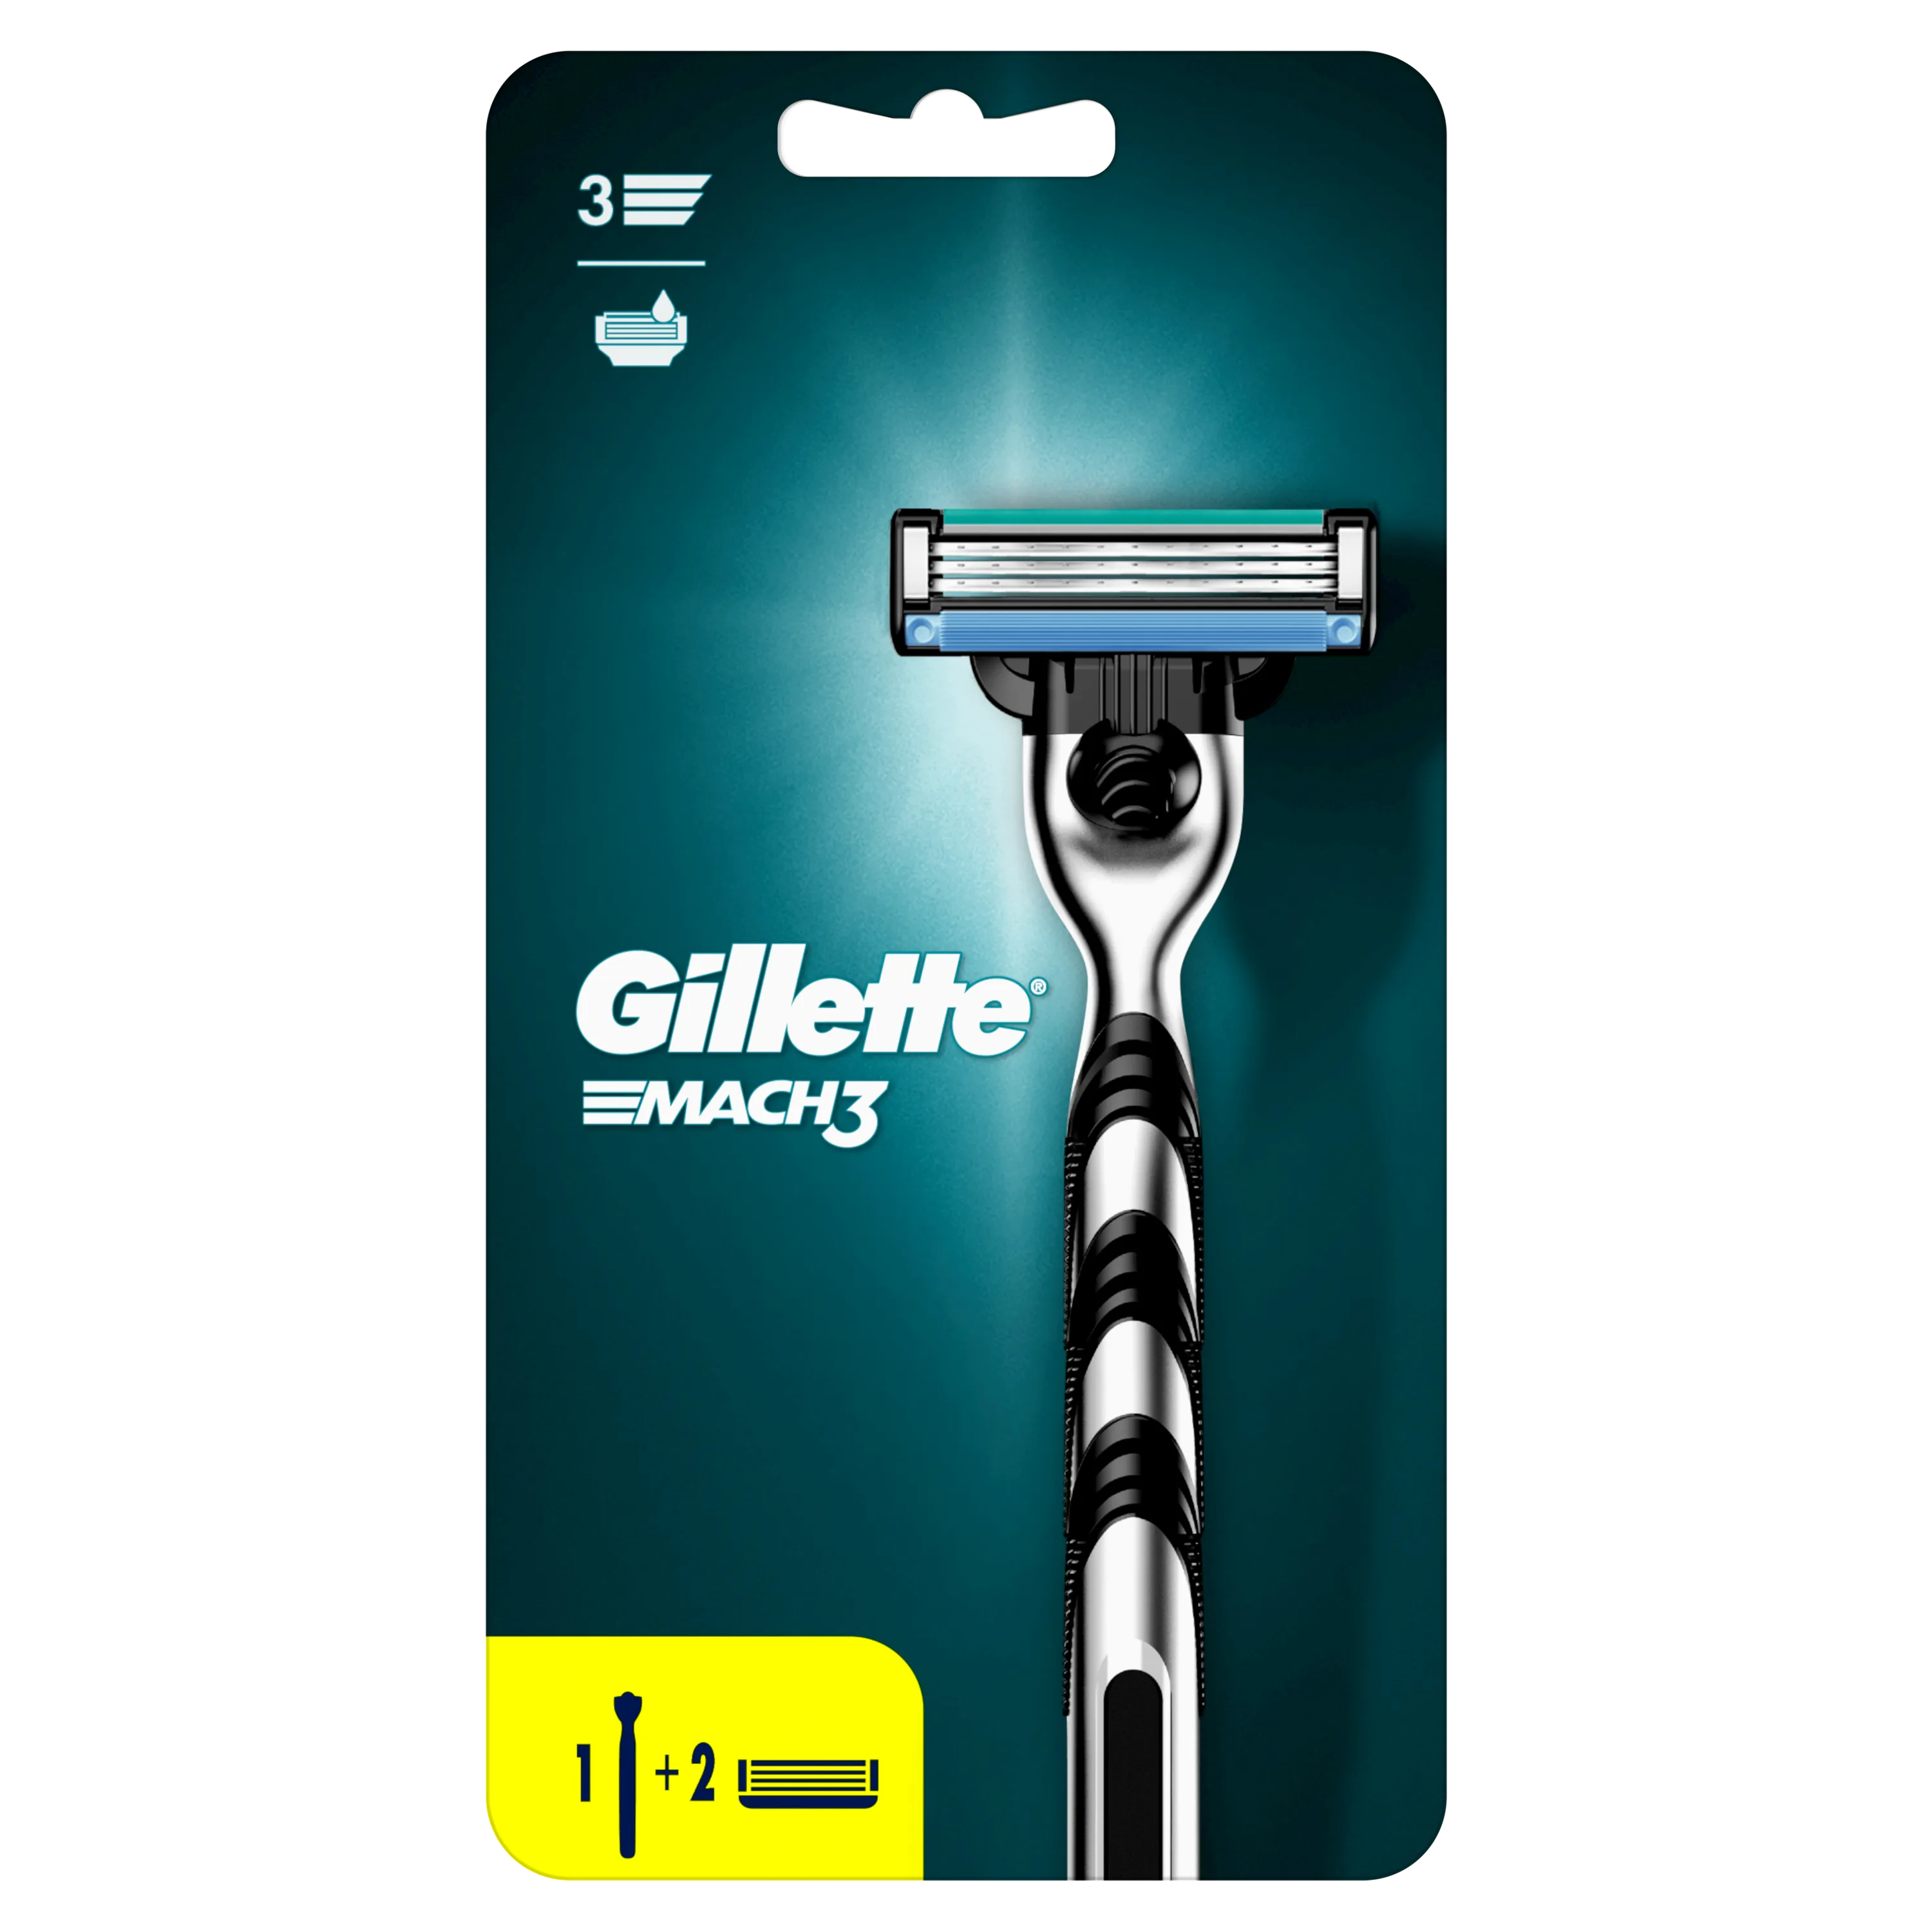 Gillette Match3 maszynka do golenia + ostrza, 1 szt. + 2 ostrza